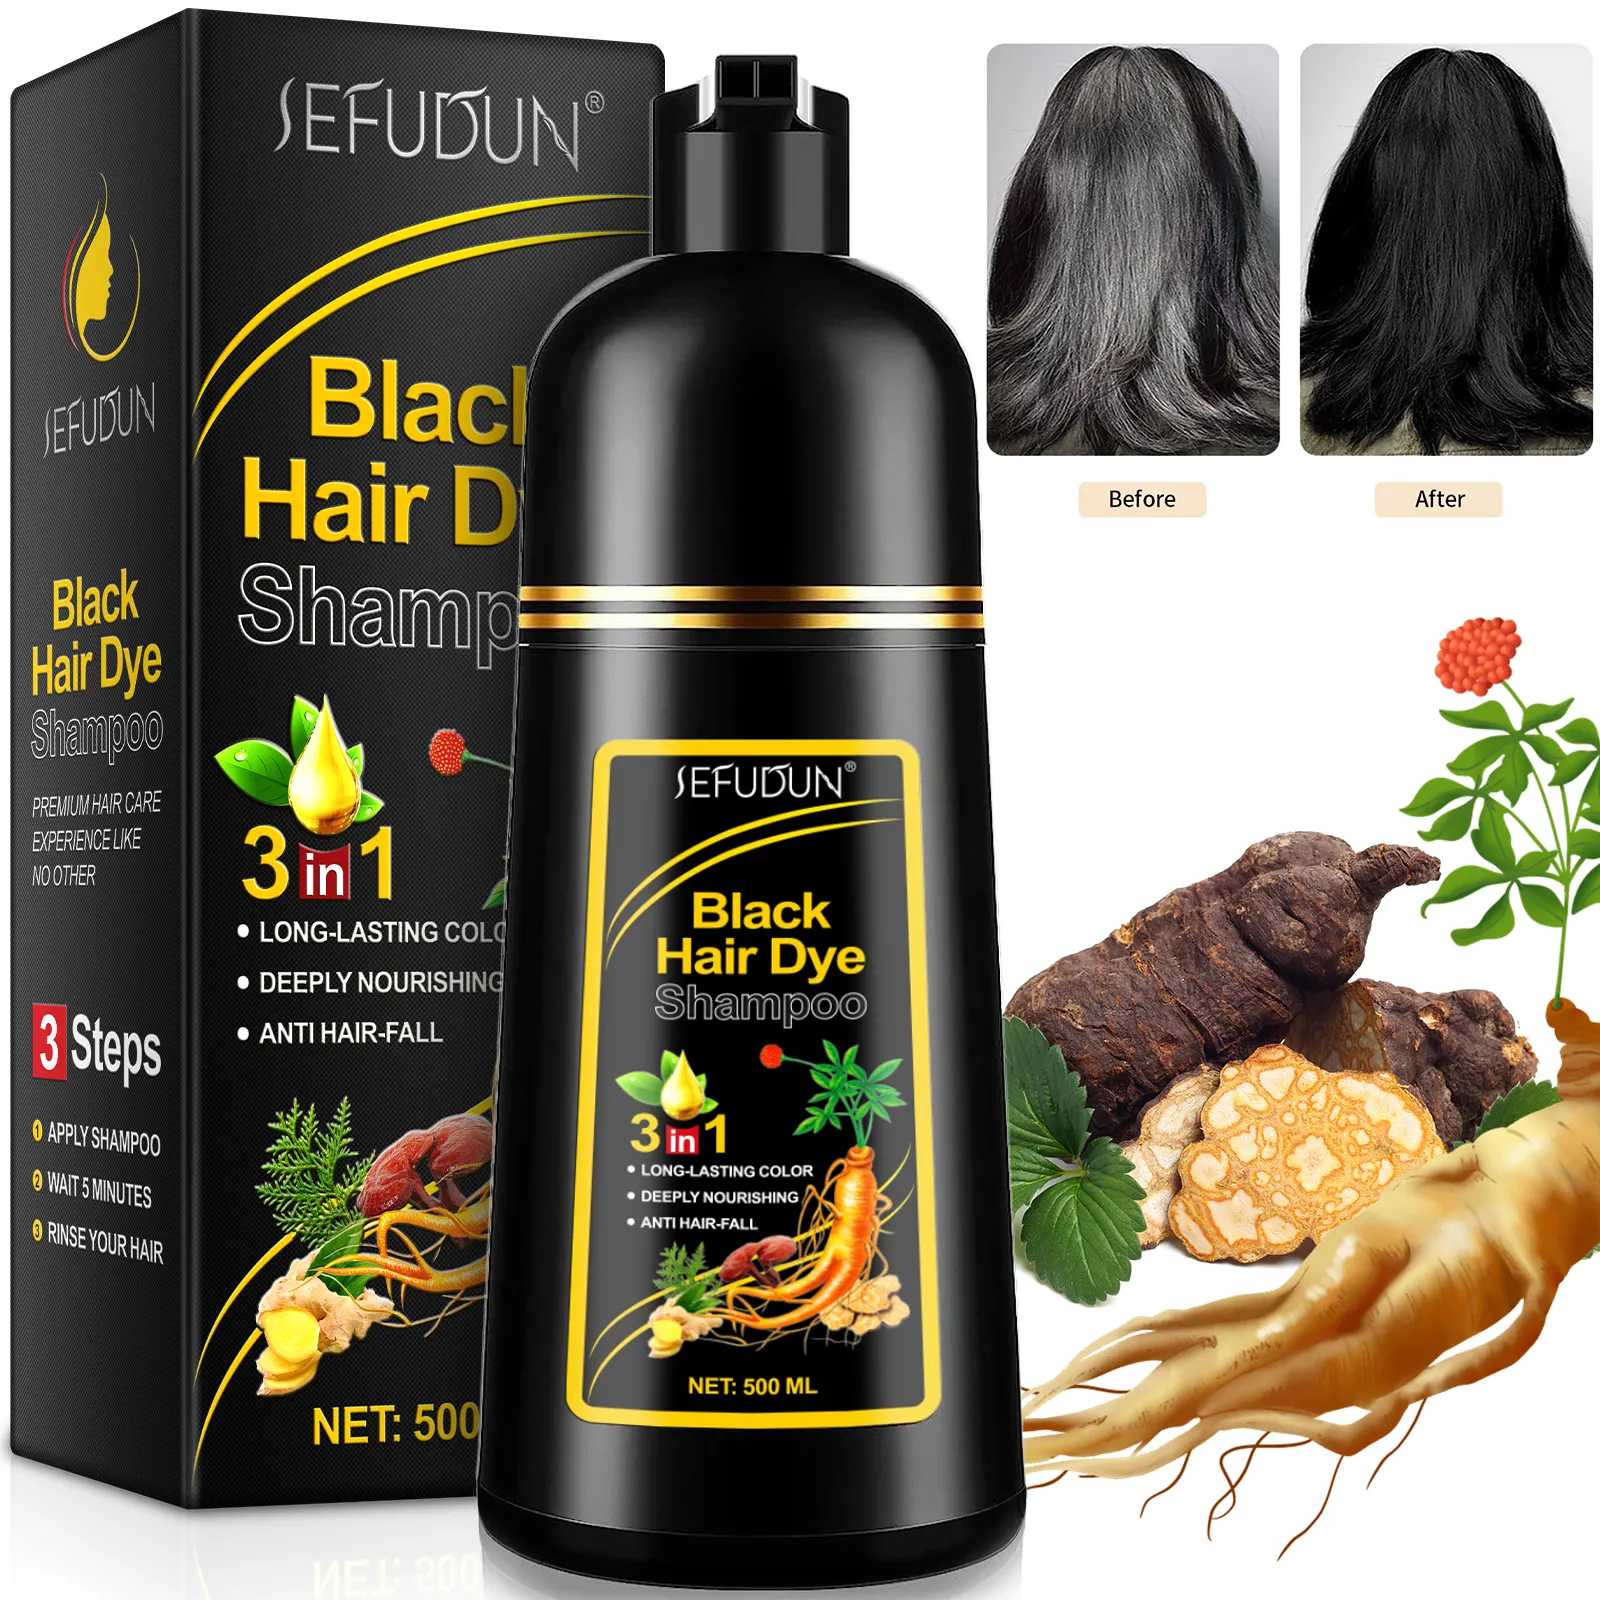 SEFUDUN nutre profundamente la prevención de la caída del cabello 3 en 1 planta burbuja negro chino hierbas tinte para el cabello champú, champú tinte para el cabello